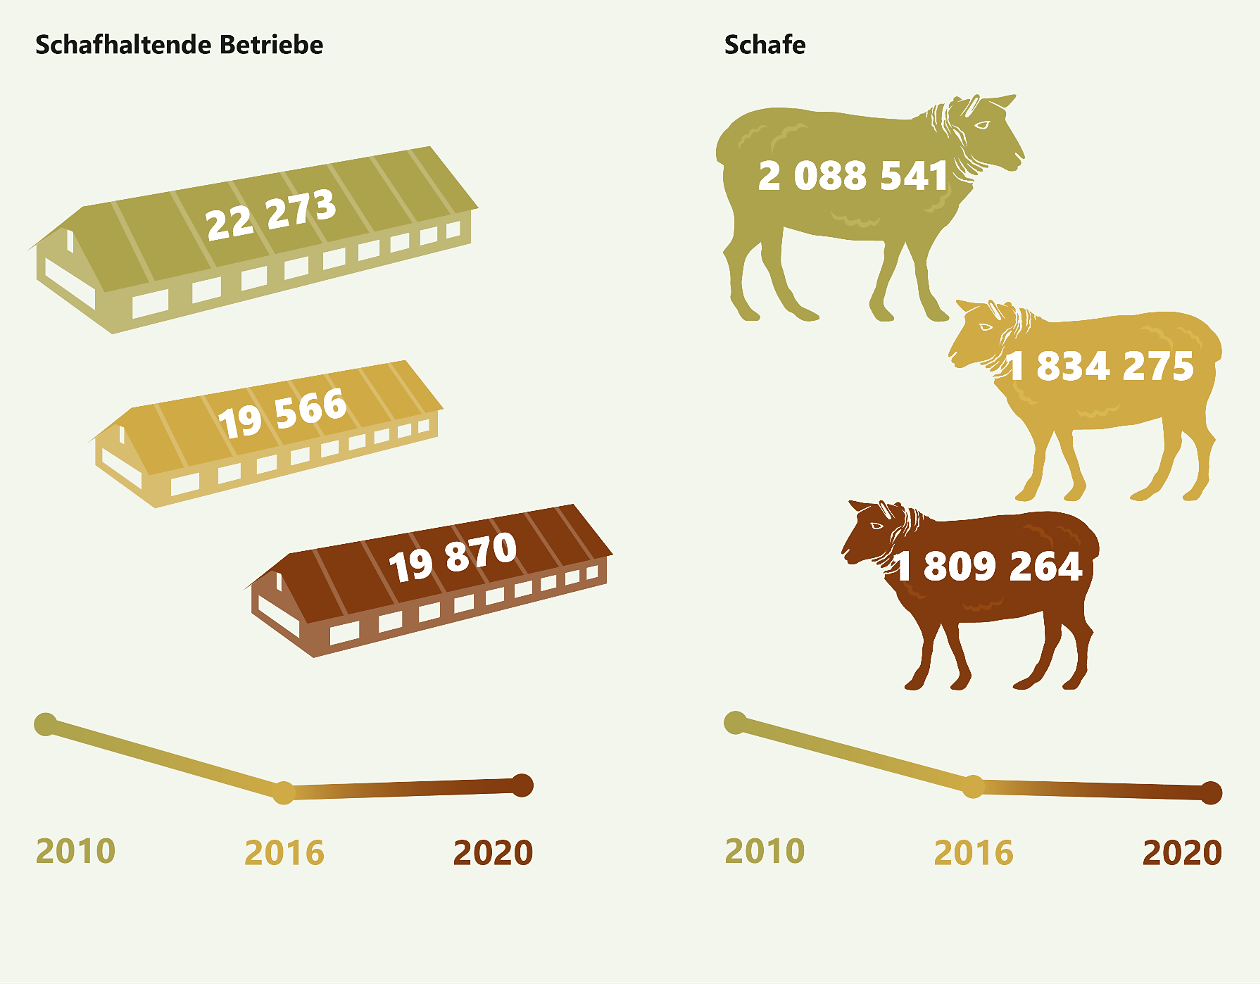 Entwicklung der schafhaltenden Betriebe und Schafbestände in Deutschland 2010 bis 2020